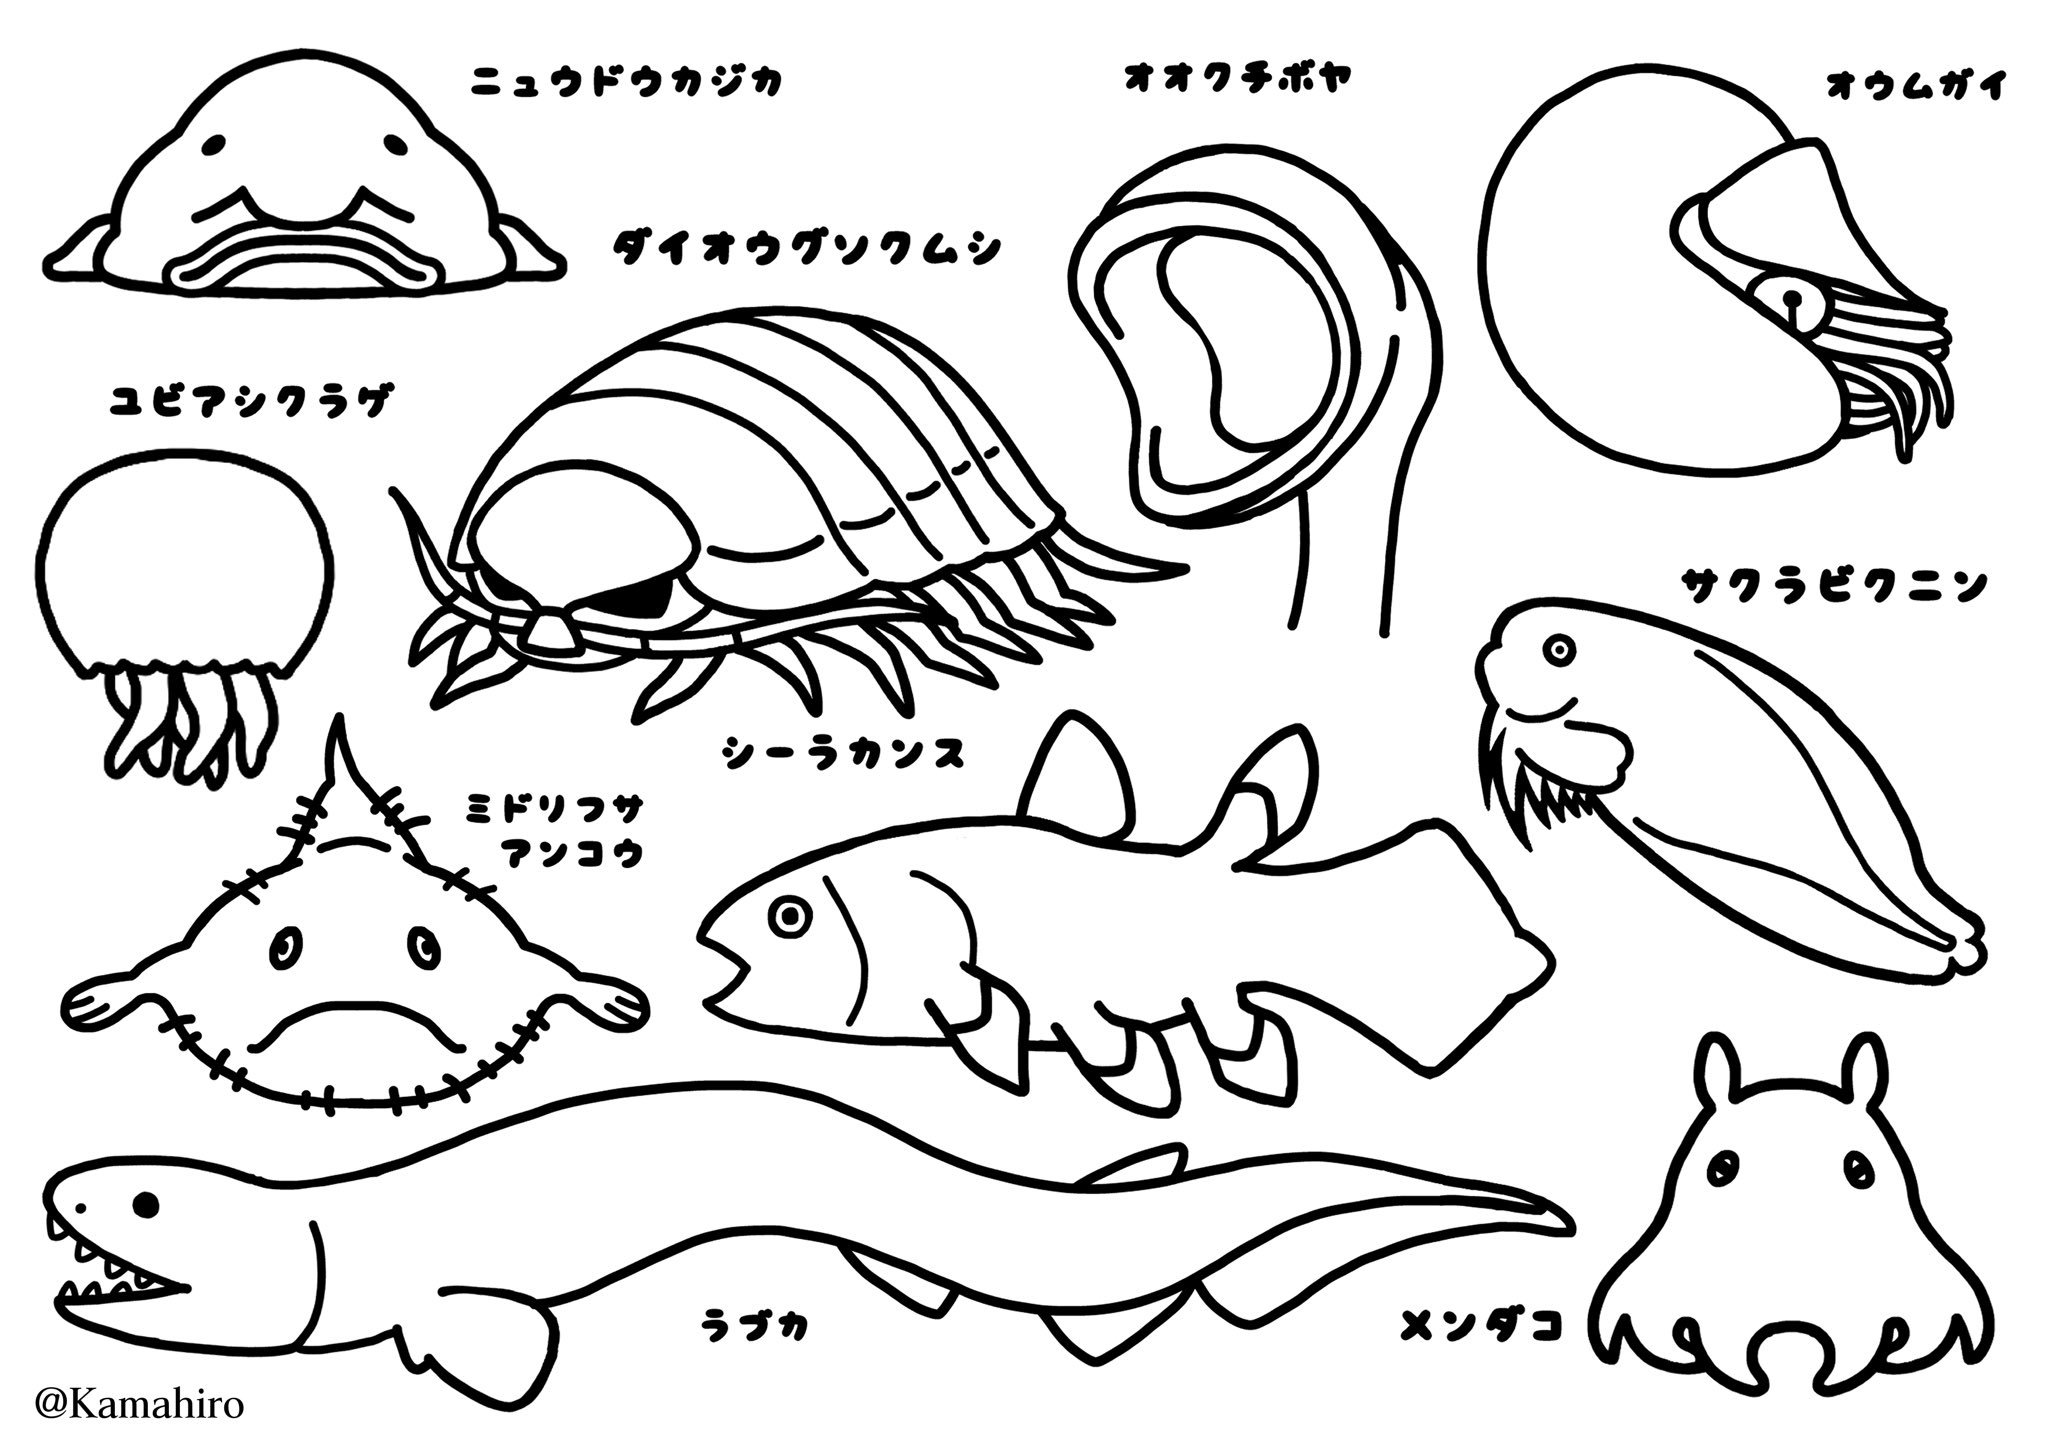 深海collectite 深海生物たちのイラストグッズ Twitter પર イラストレーターにできること 素敵な活動だと思ったので 参加させていただきました 深海魚とデジタル時代の線画イラストをぬりえをにしてみましたので良ければお使いください サイズ 使用